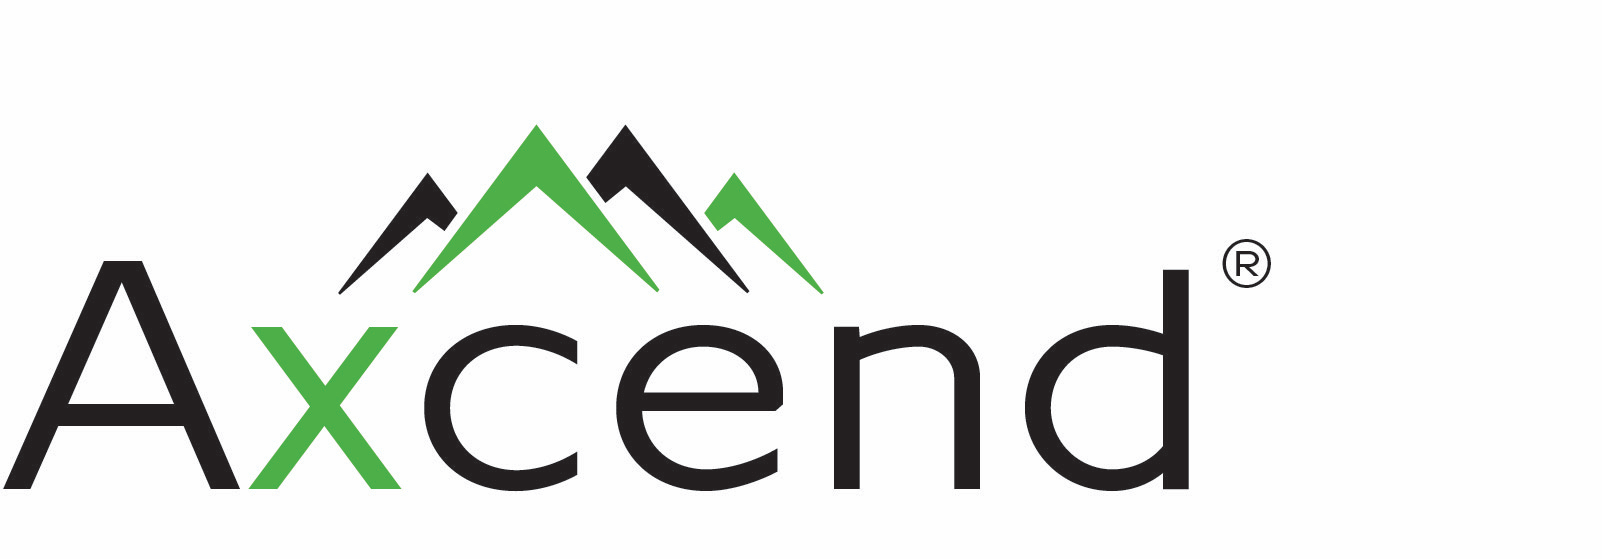 Axcend logo